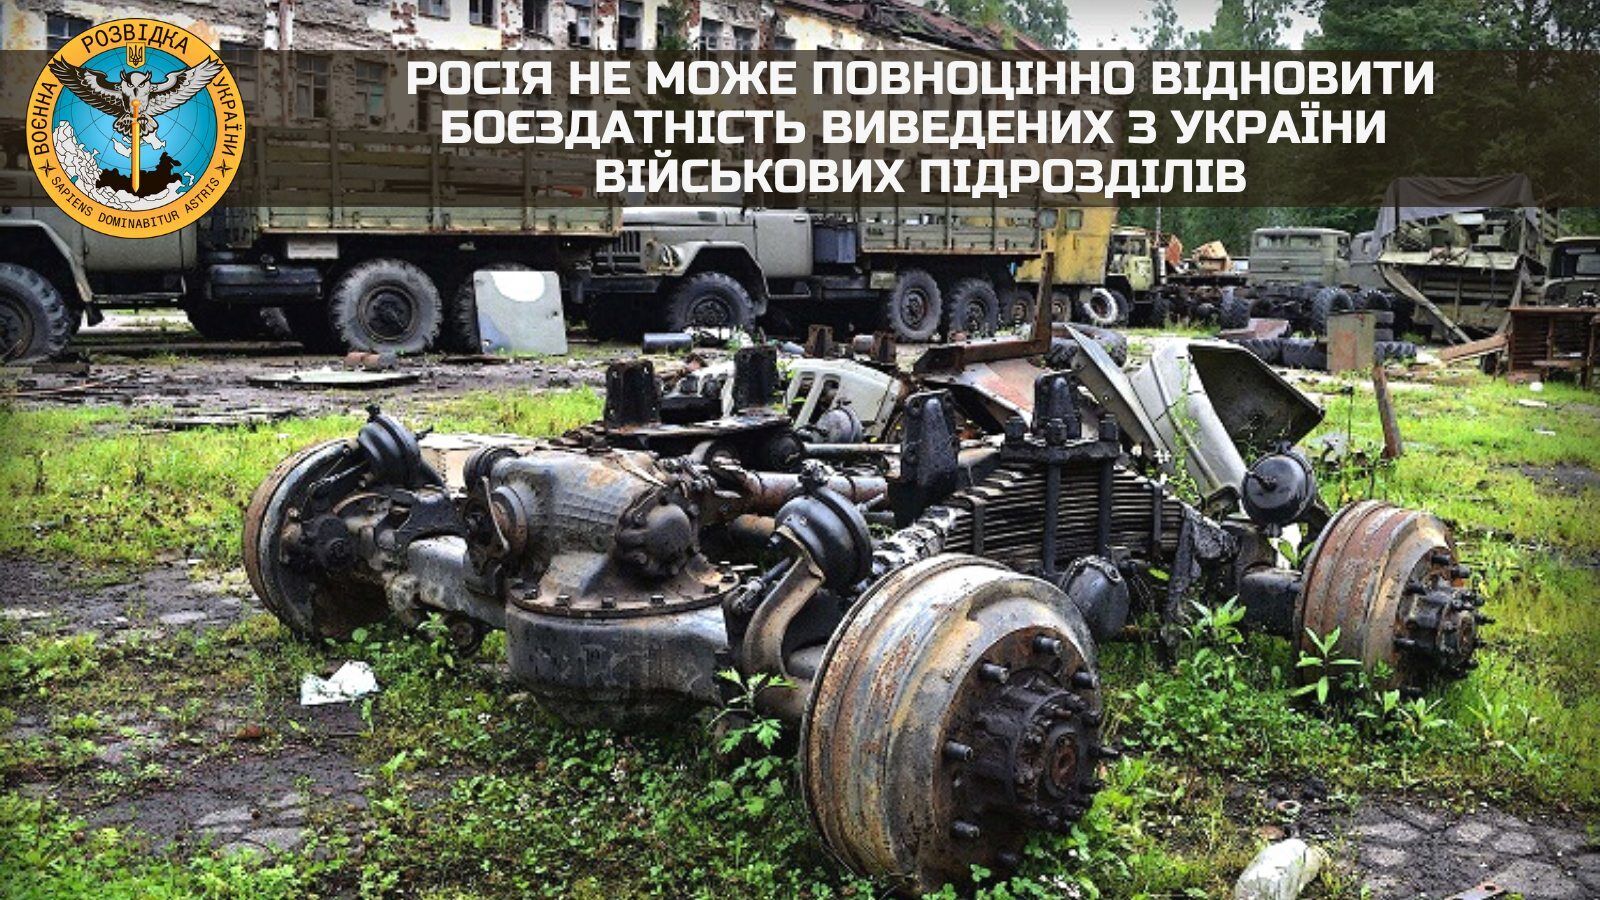 РФ не може повноцінно відновити боєздатність виведених із України підрозділів окупантів